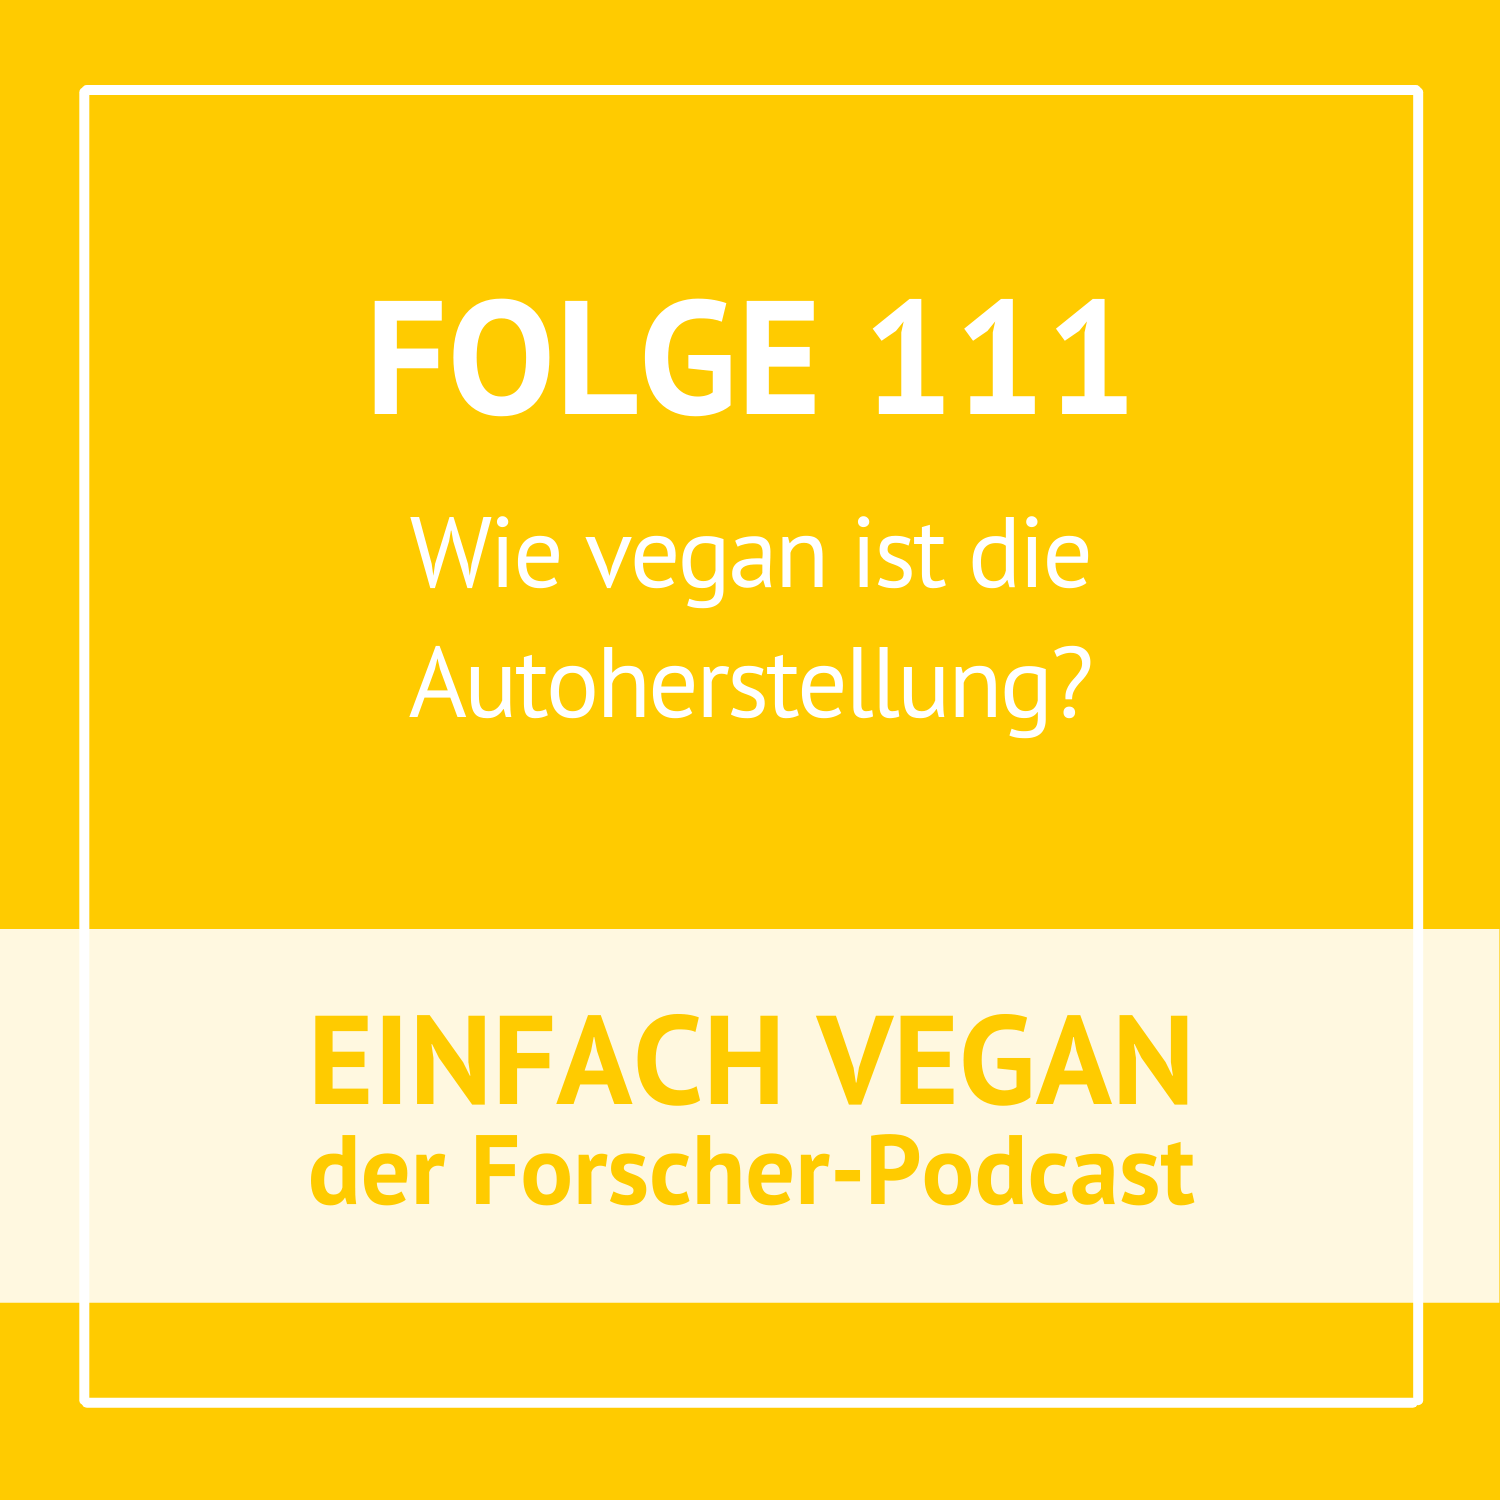 Folge 111 - Wie vegan ist die Autoherstellung?